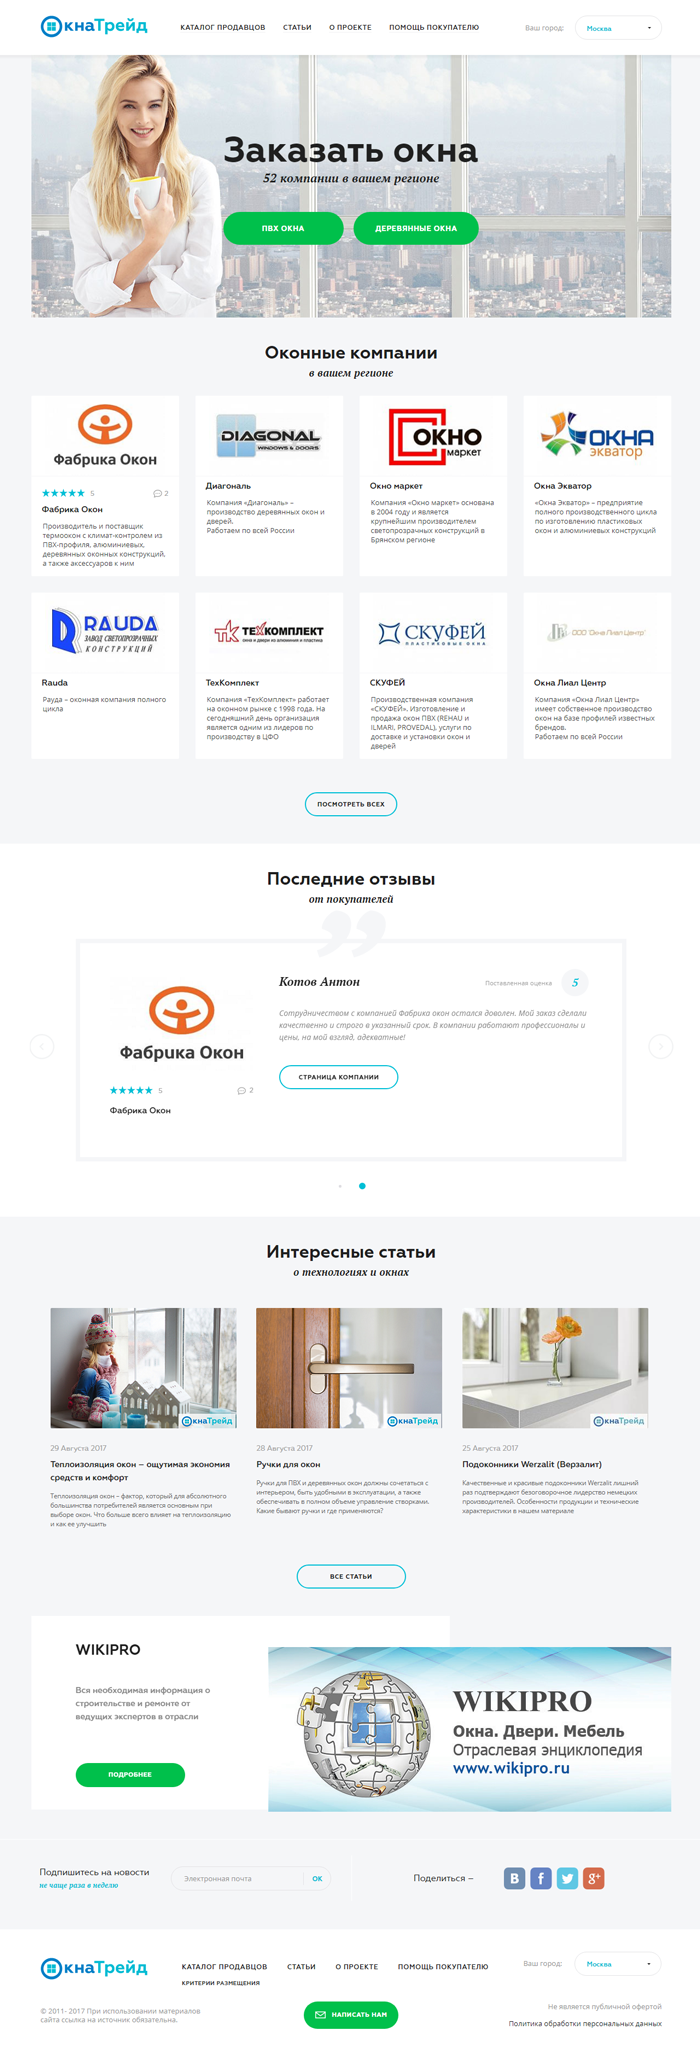 «окна трейд» — всероссийский сайт-каталог продавцов окон